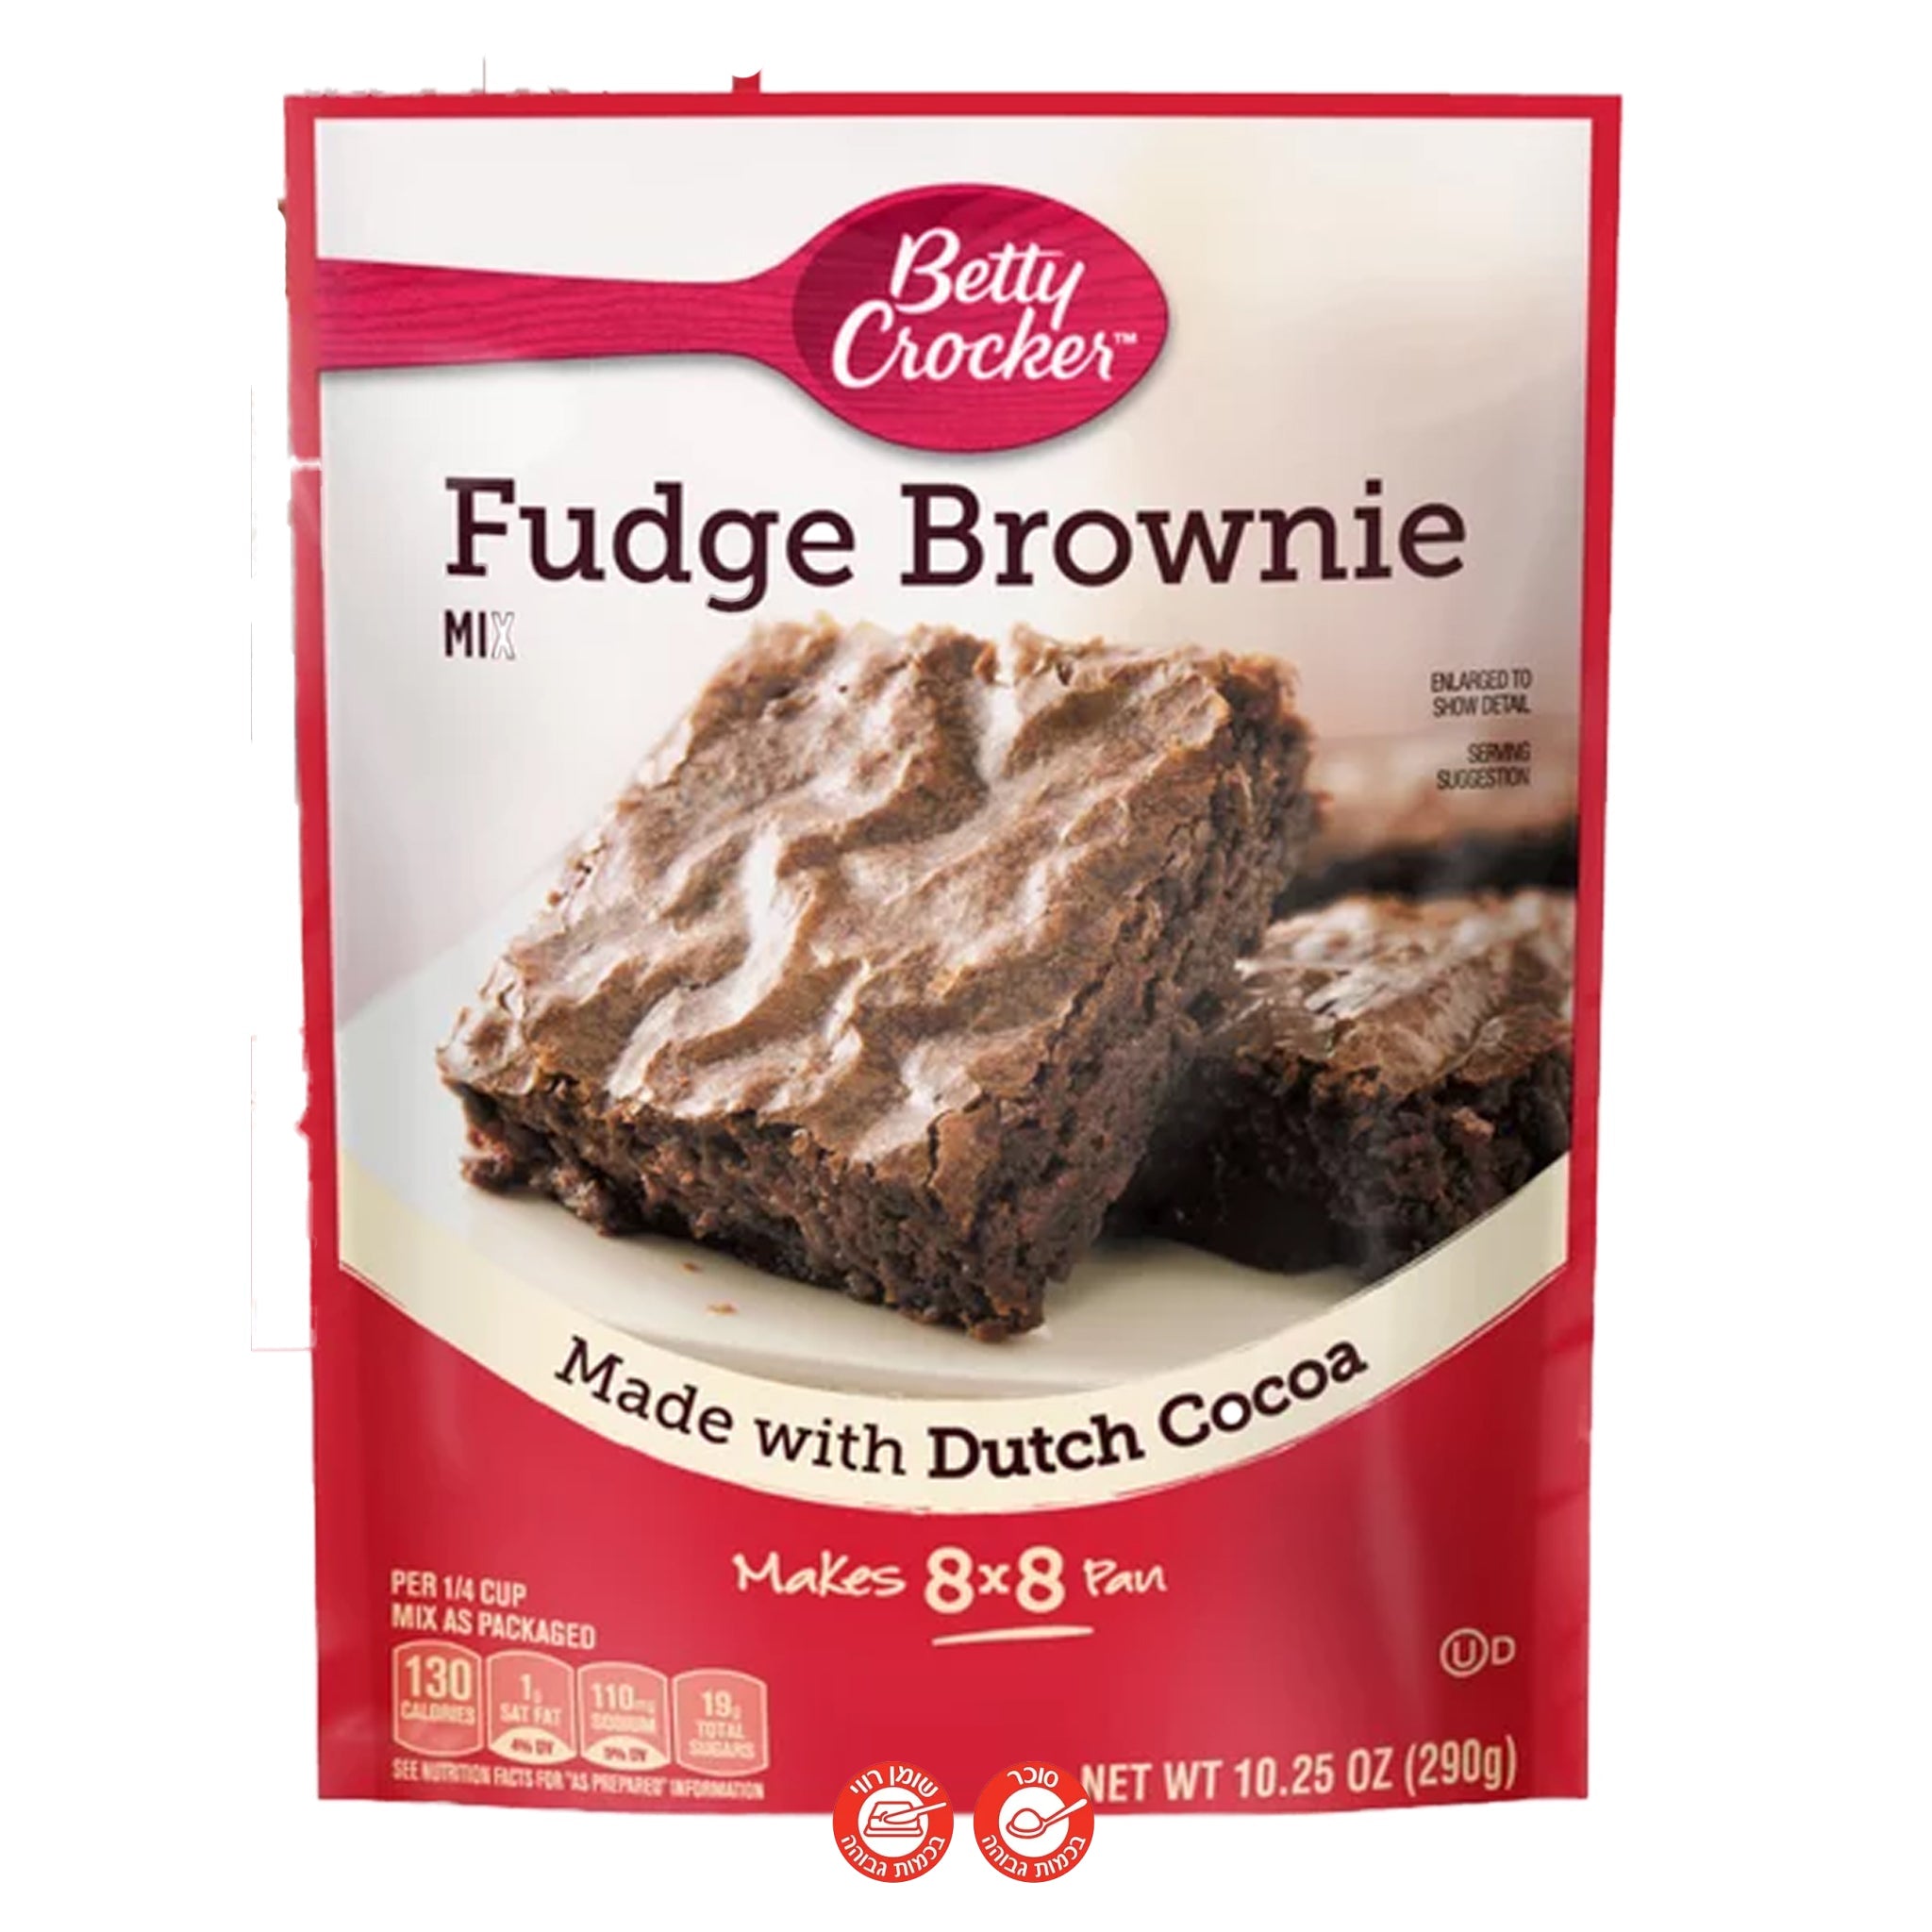 Betty Crocker Fudge Brownie בטי קרוקר פאדג' שוקולד